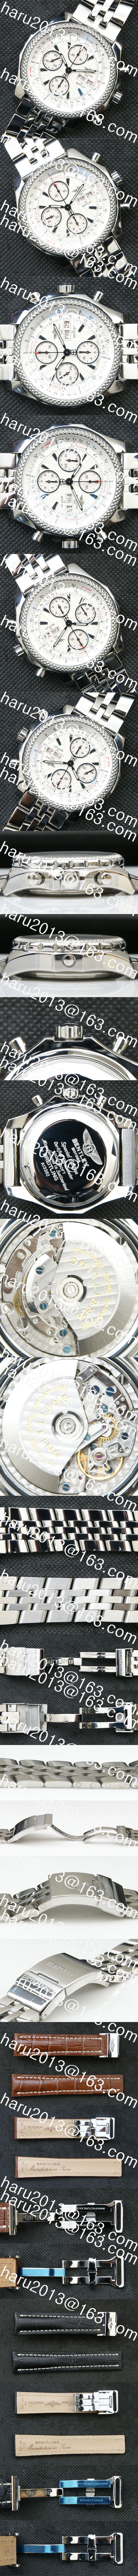 ブライトリング コピー時計、ベントレー GTレーシング Asian 7750搭載 28800振動